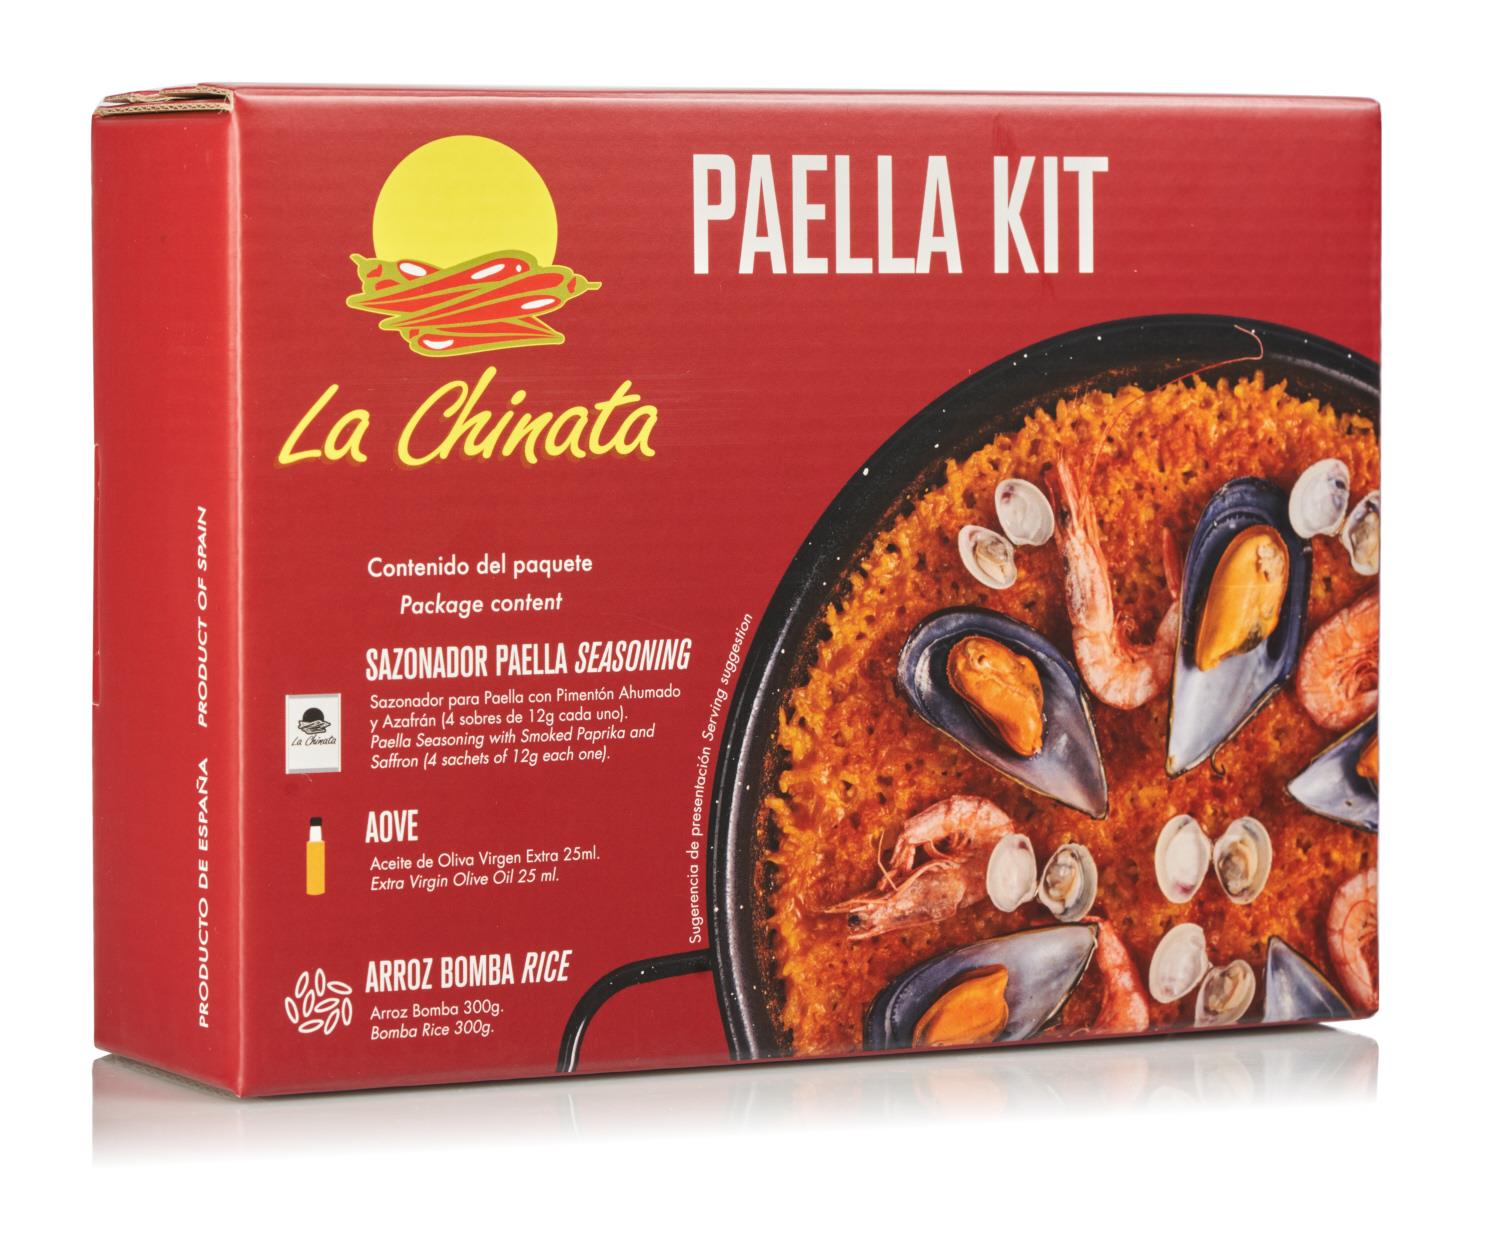 Paella KIT "La Chinata" - komplett KIT für Paella mit Pfanne